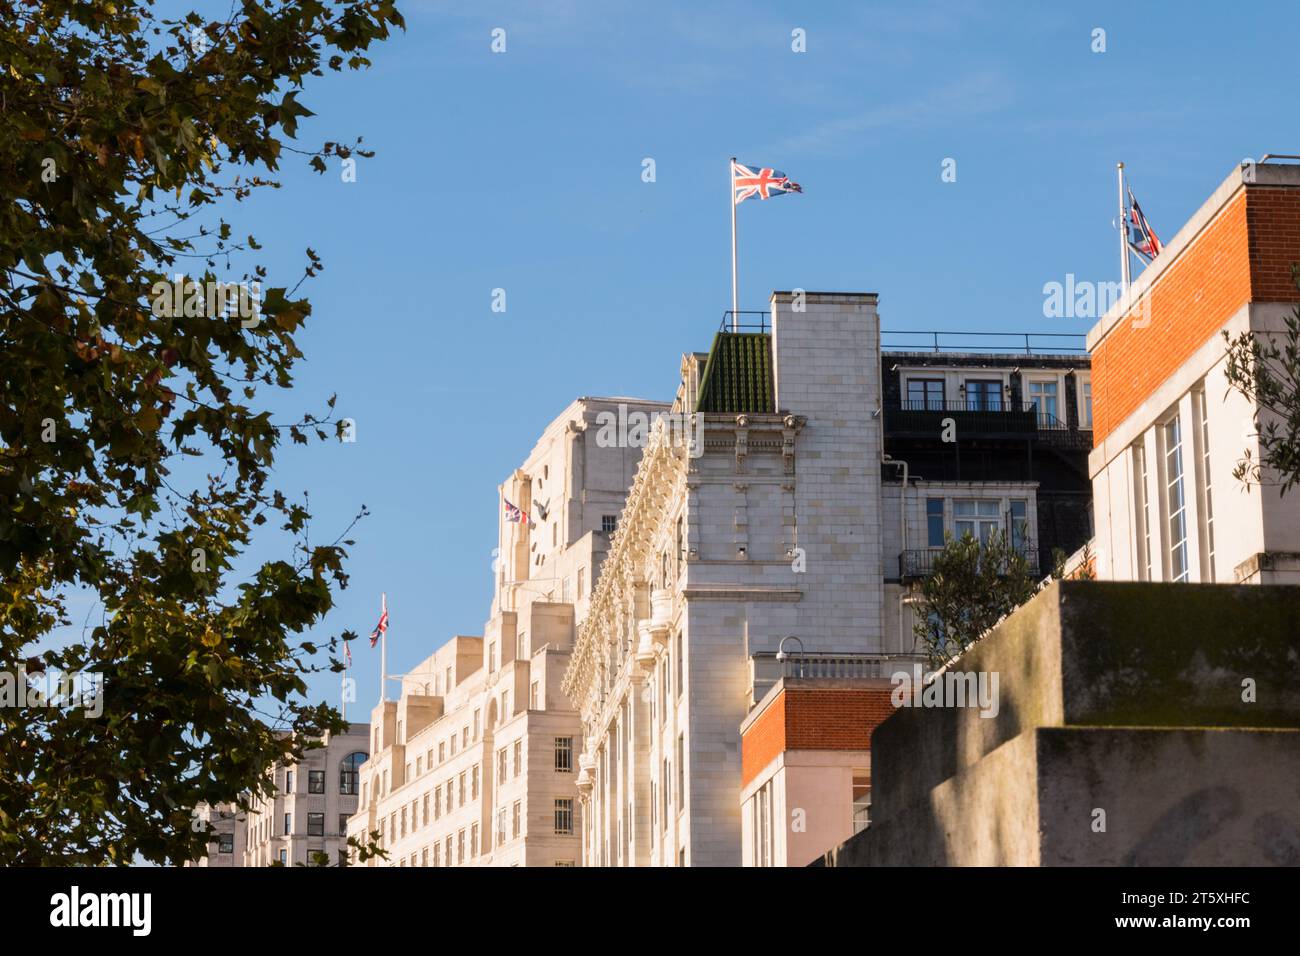 Schräge Ansicht von Frances Milton Cashmore's Shell Mex House (auch bekannt als 80 Strand), London, WC2, England, Großbritannien Stockfoto